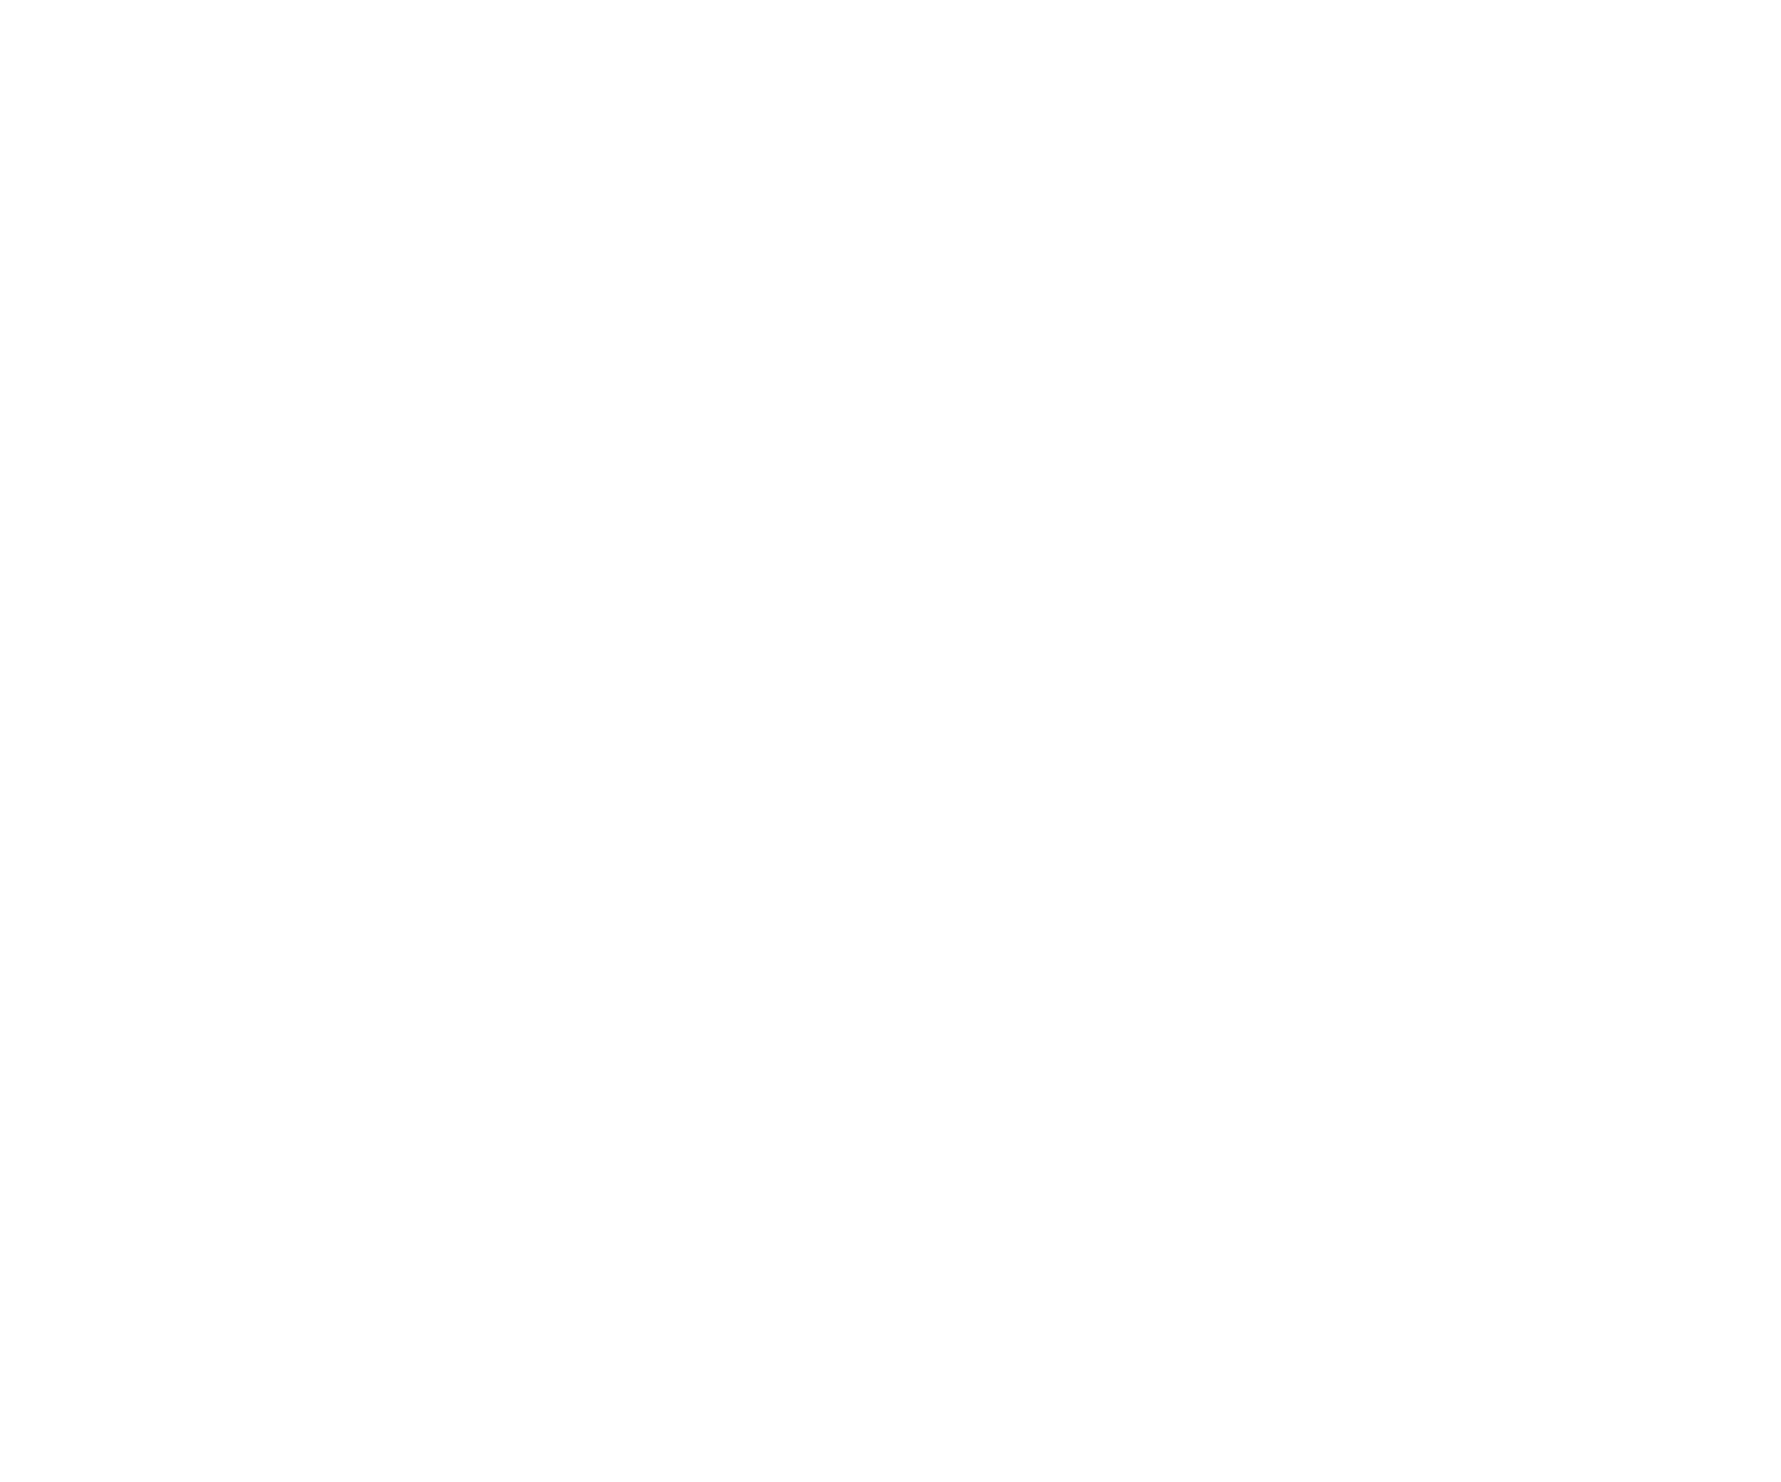 Egurrola Dance League